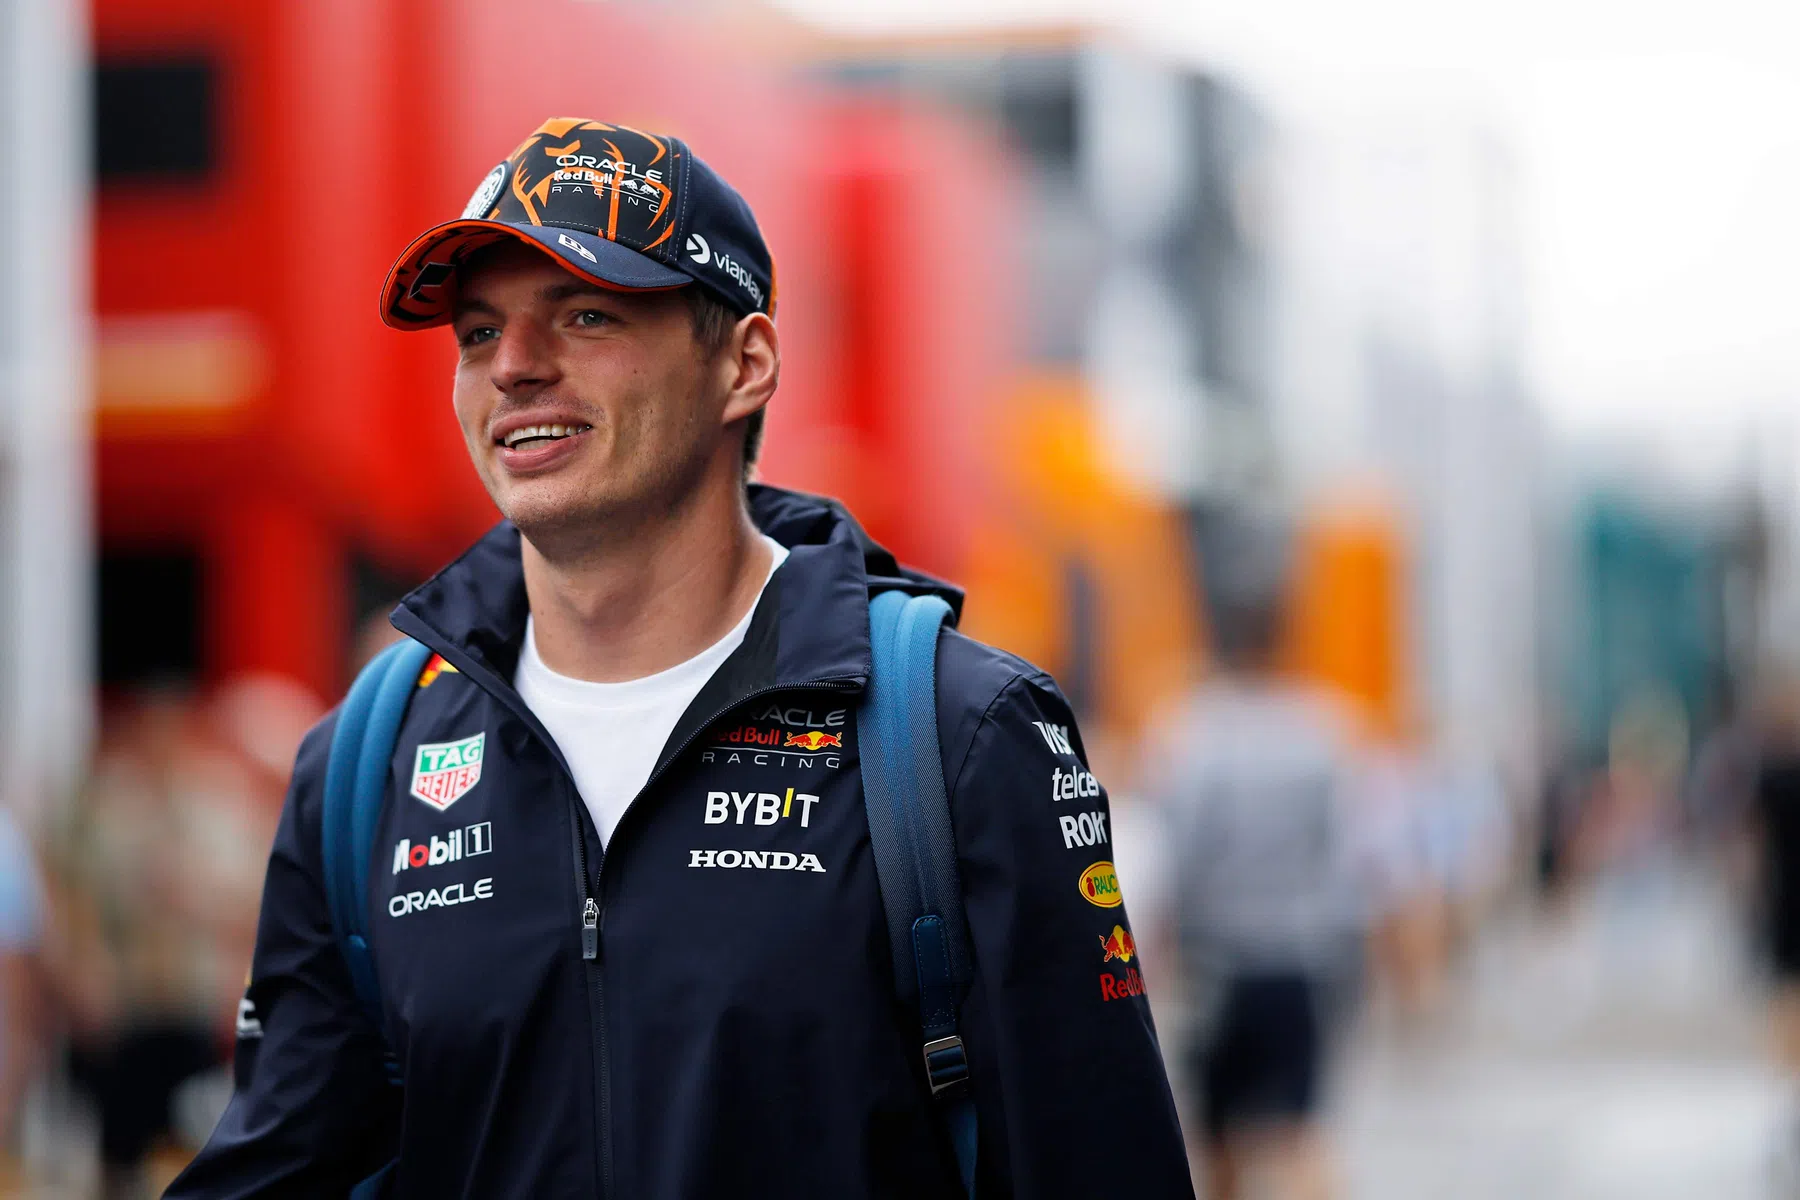 Volverá a dominar Verstappen en España?